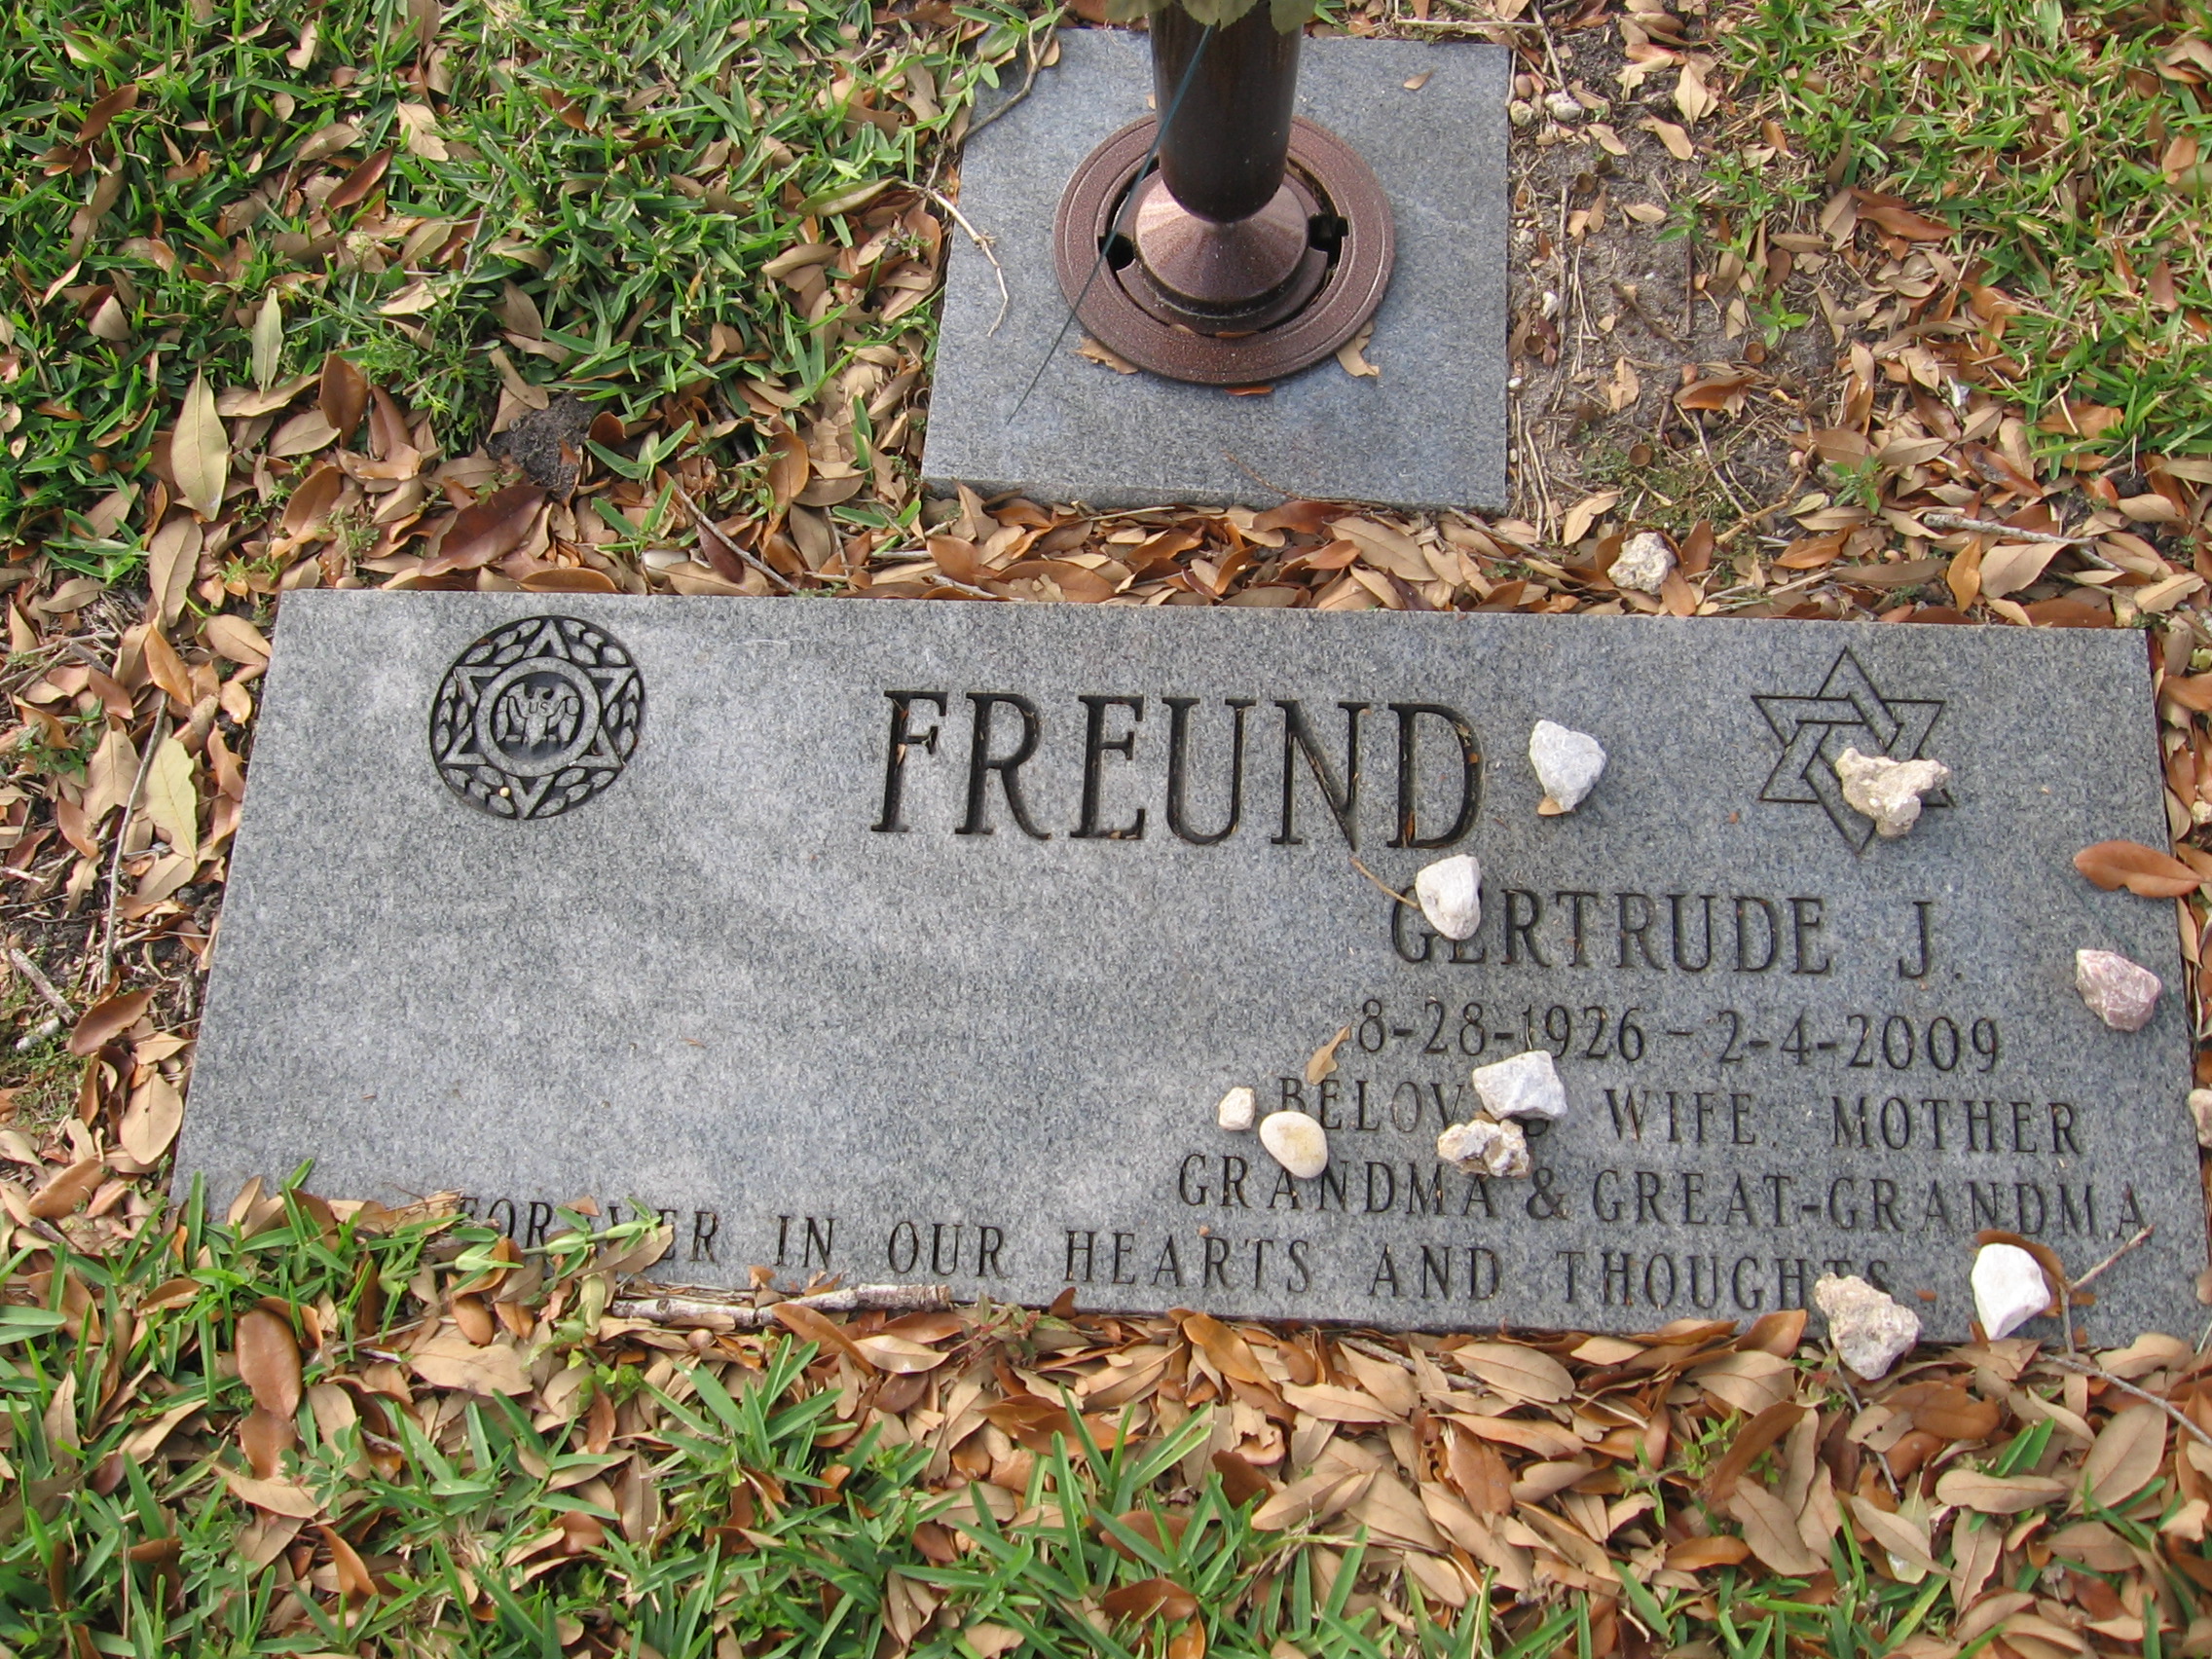 Gertrude J Freund